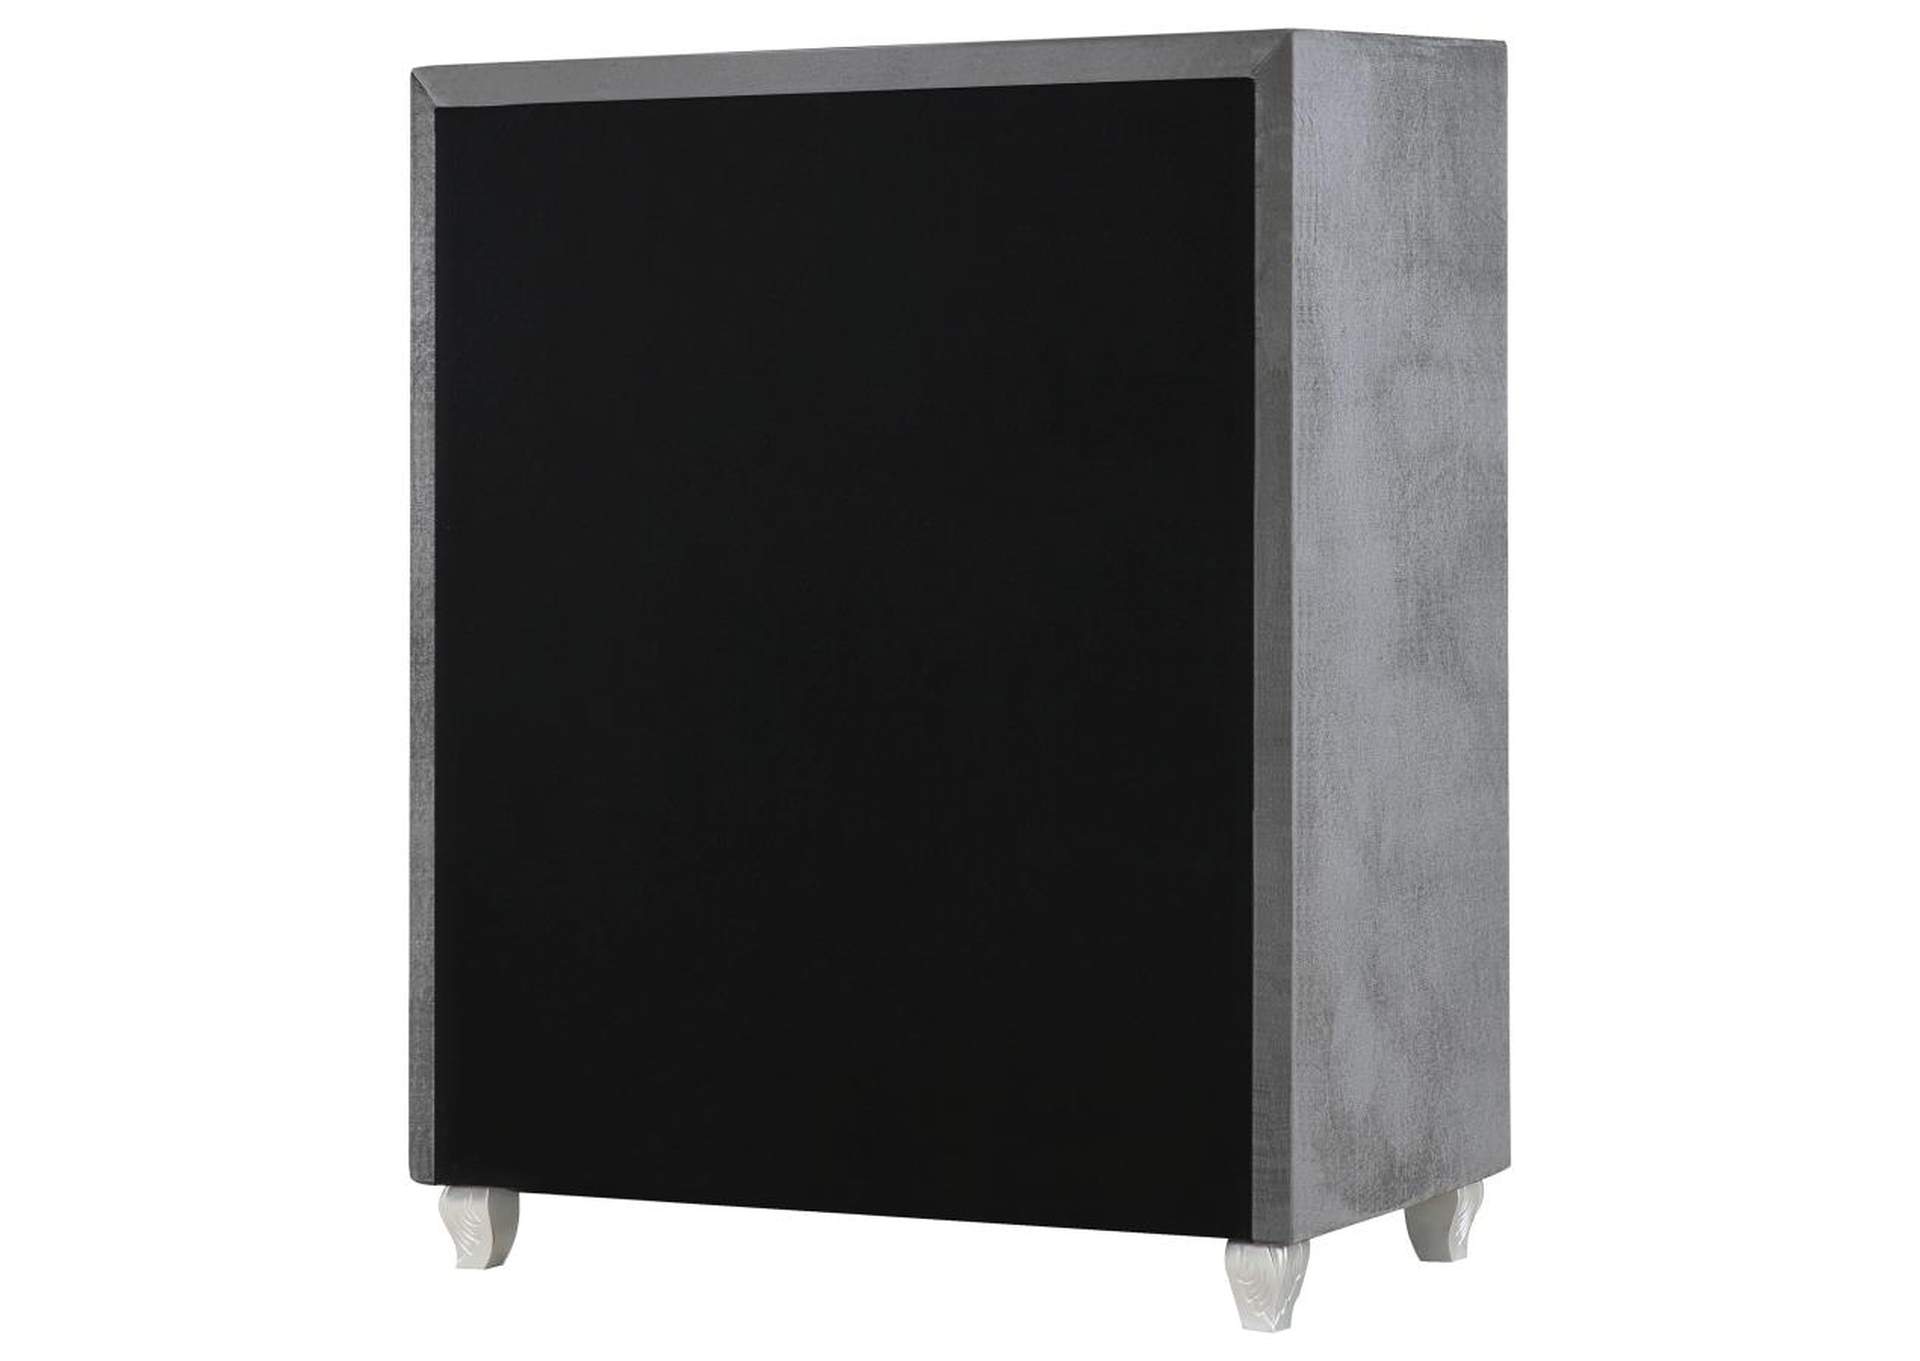 Deanna 5 - drawer Rectangular Chest Grey,Coaster Furniture